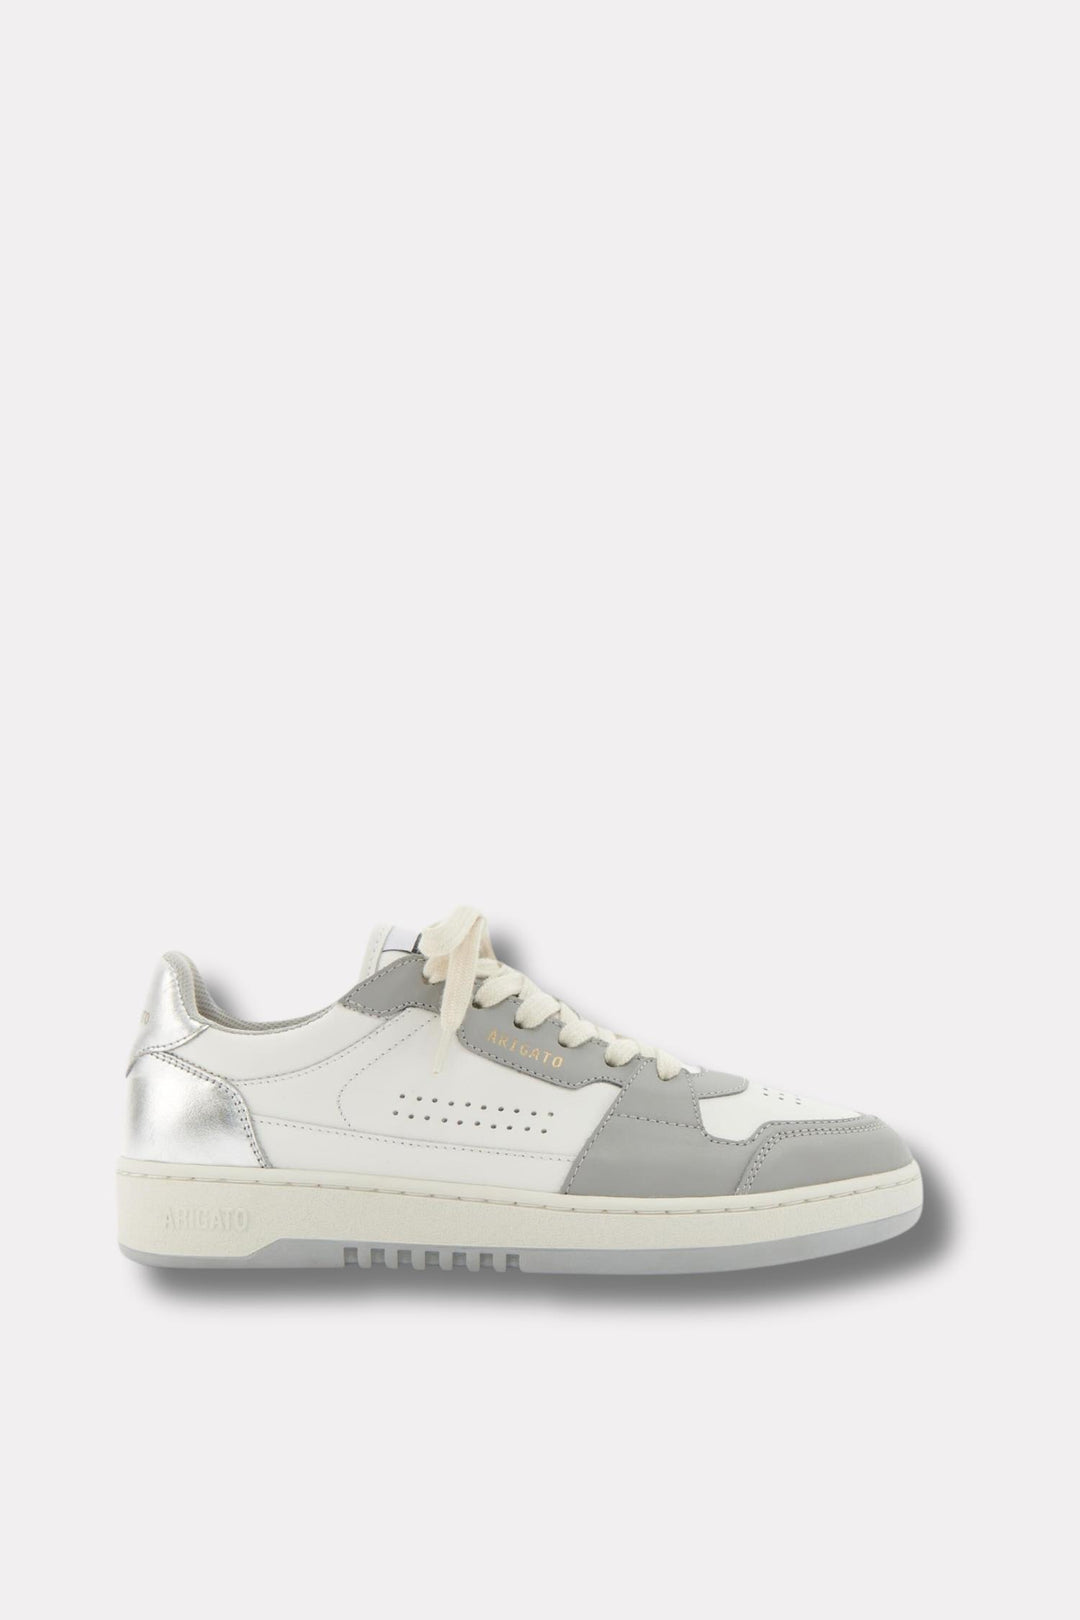 W Dice Lo Sneaker White/Silver